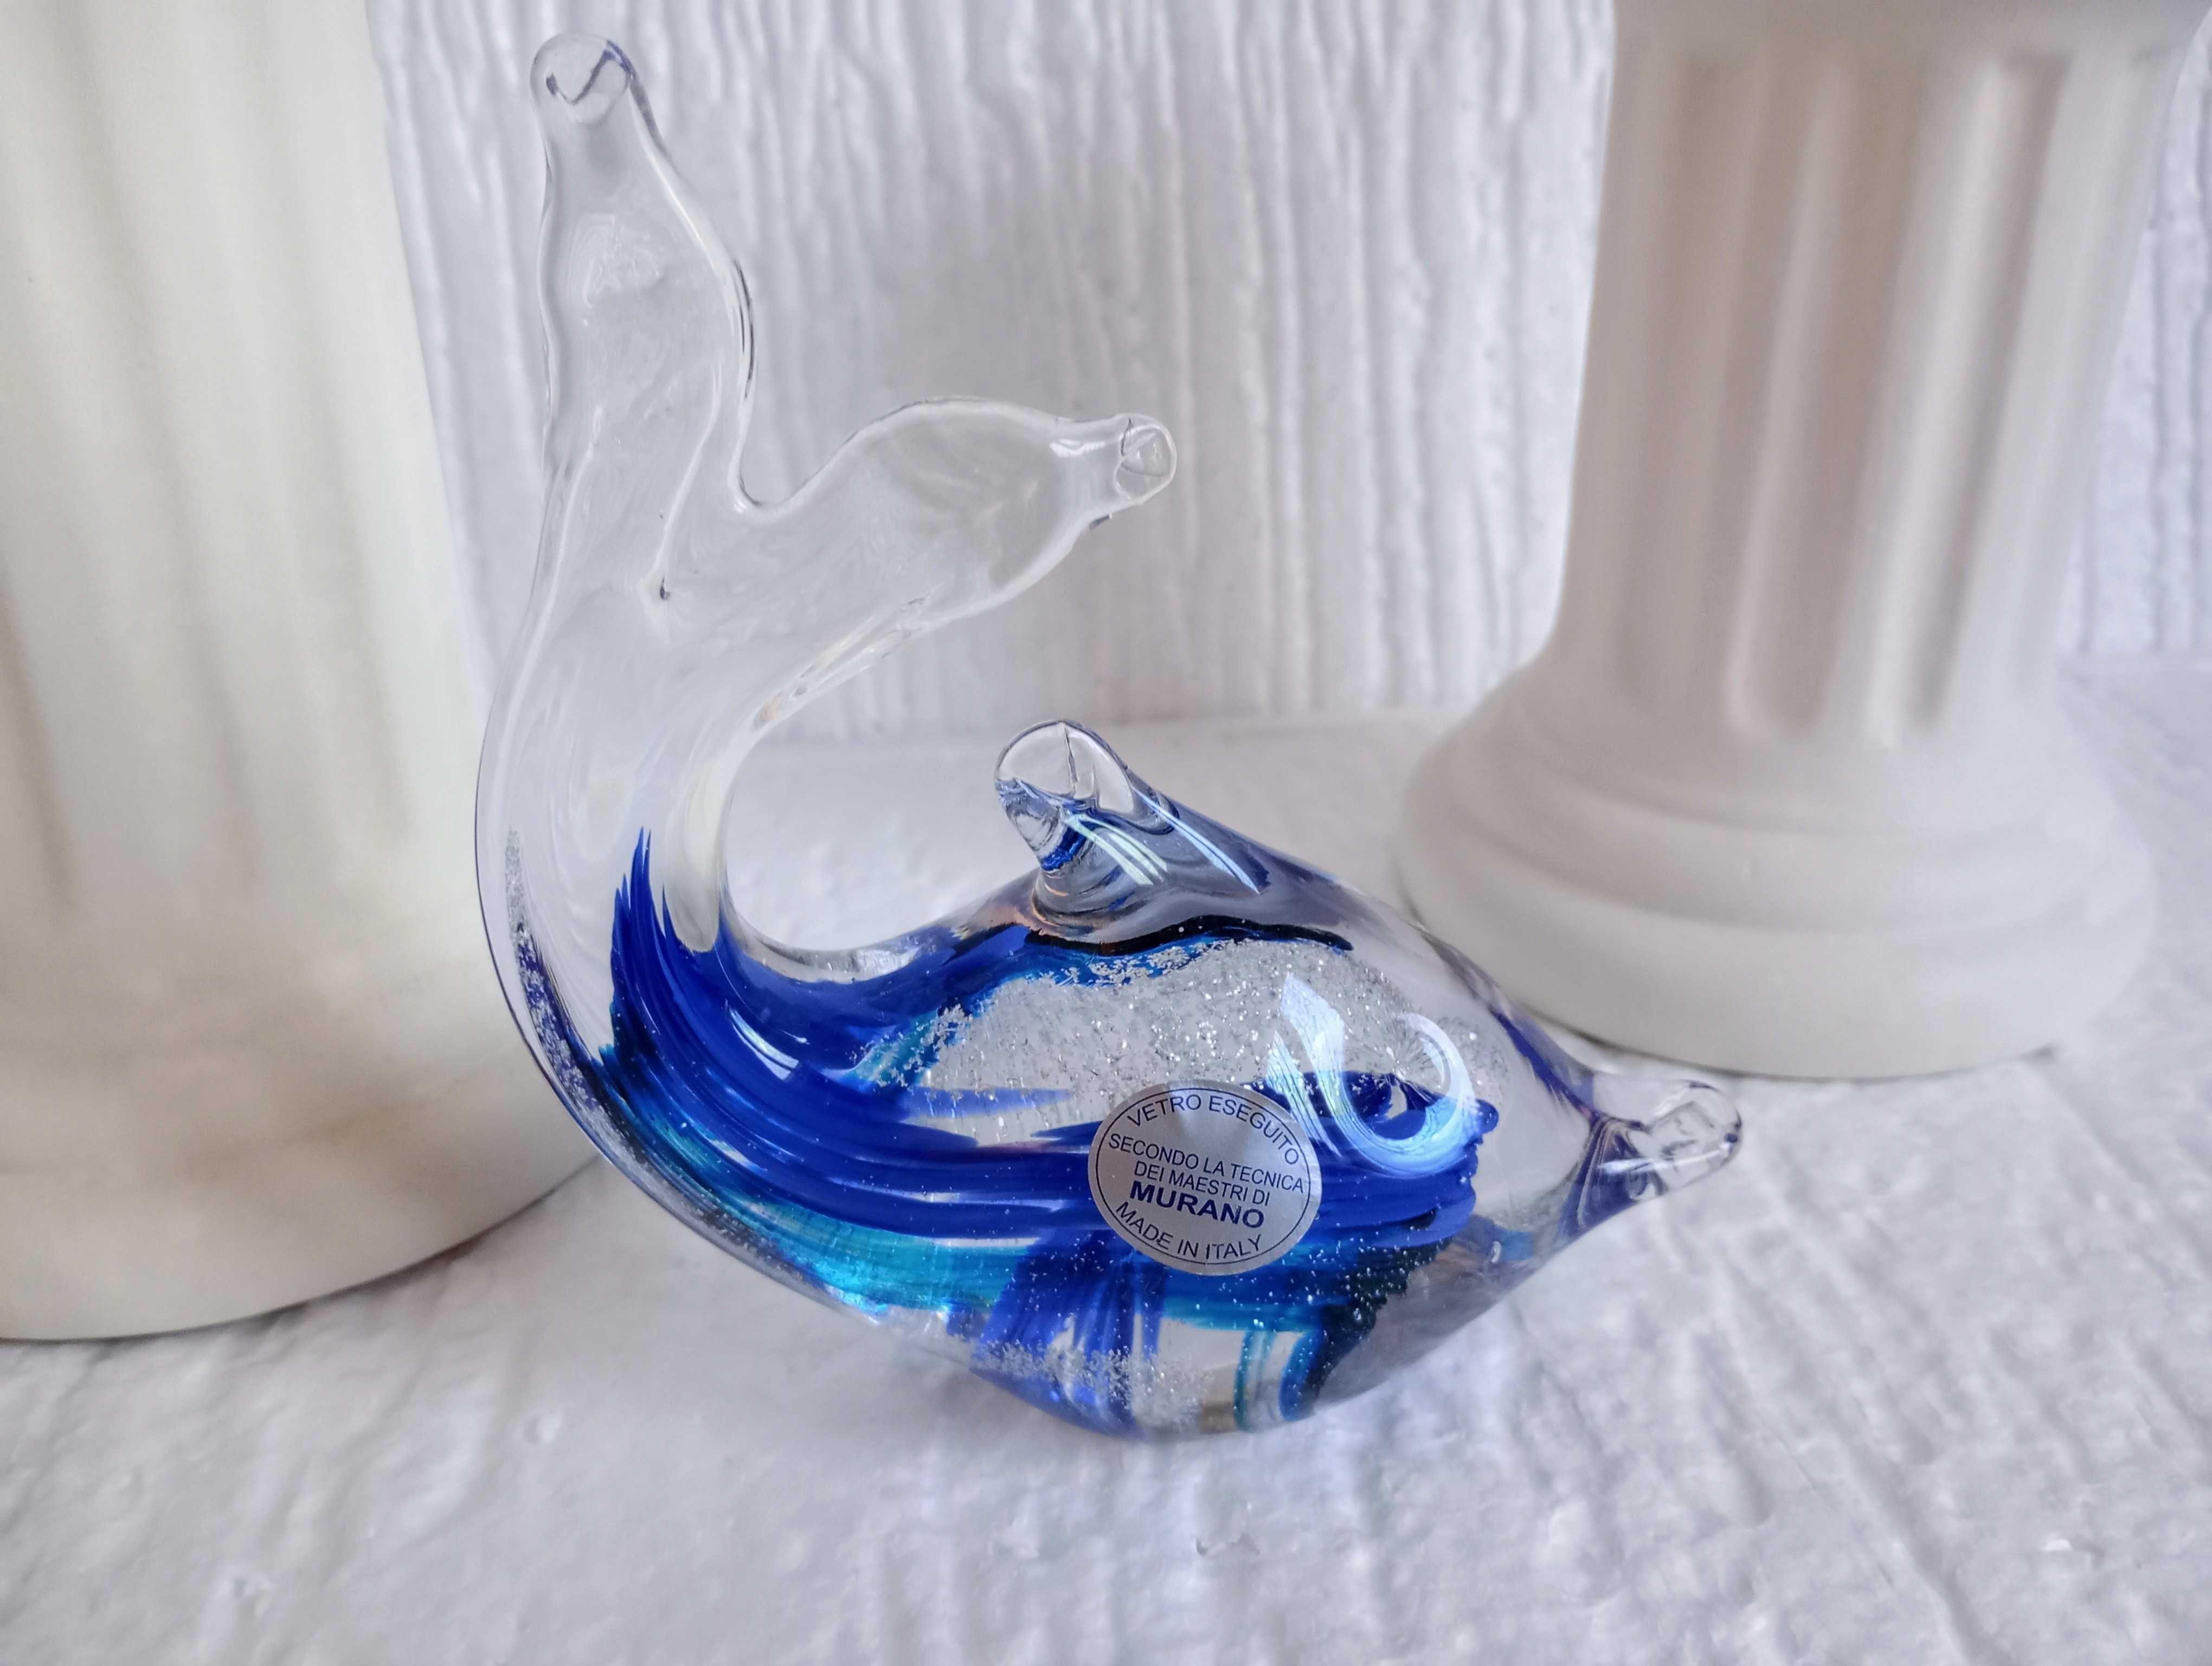 Figurka delfina ze szkła, wykonana według techniki mistrzów z Murano